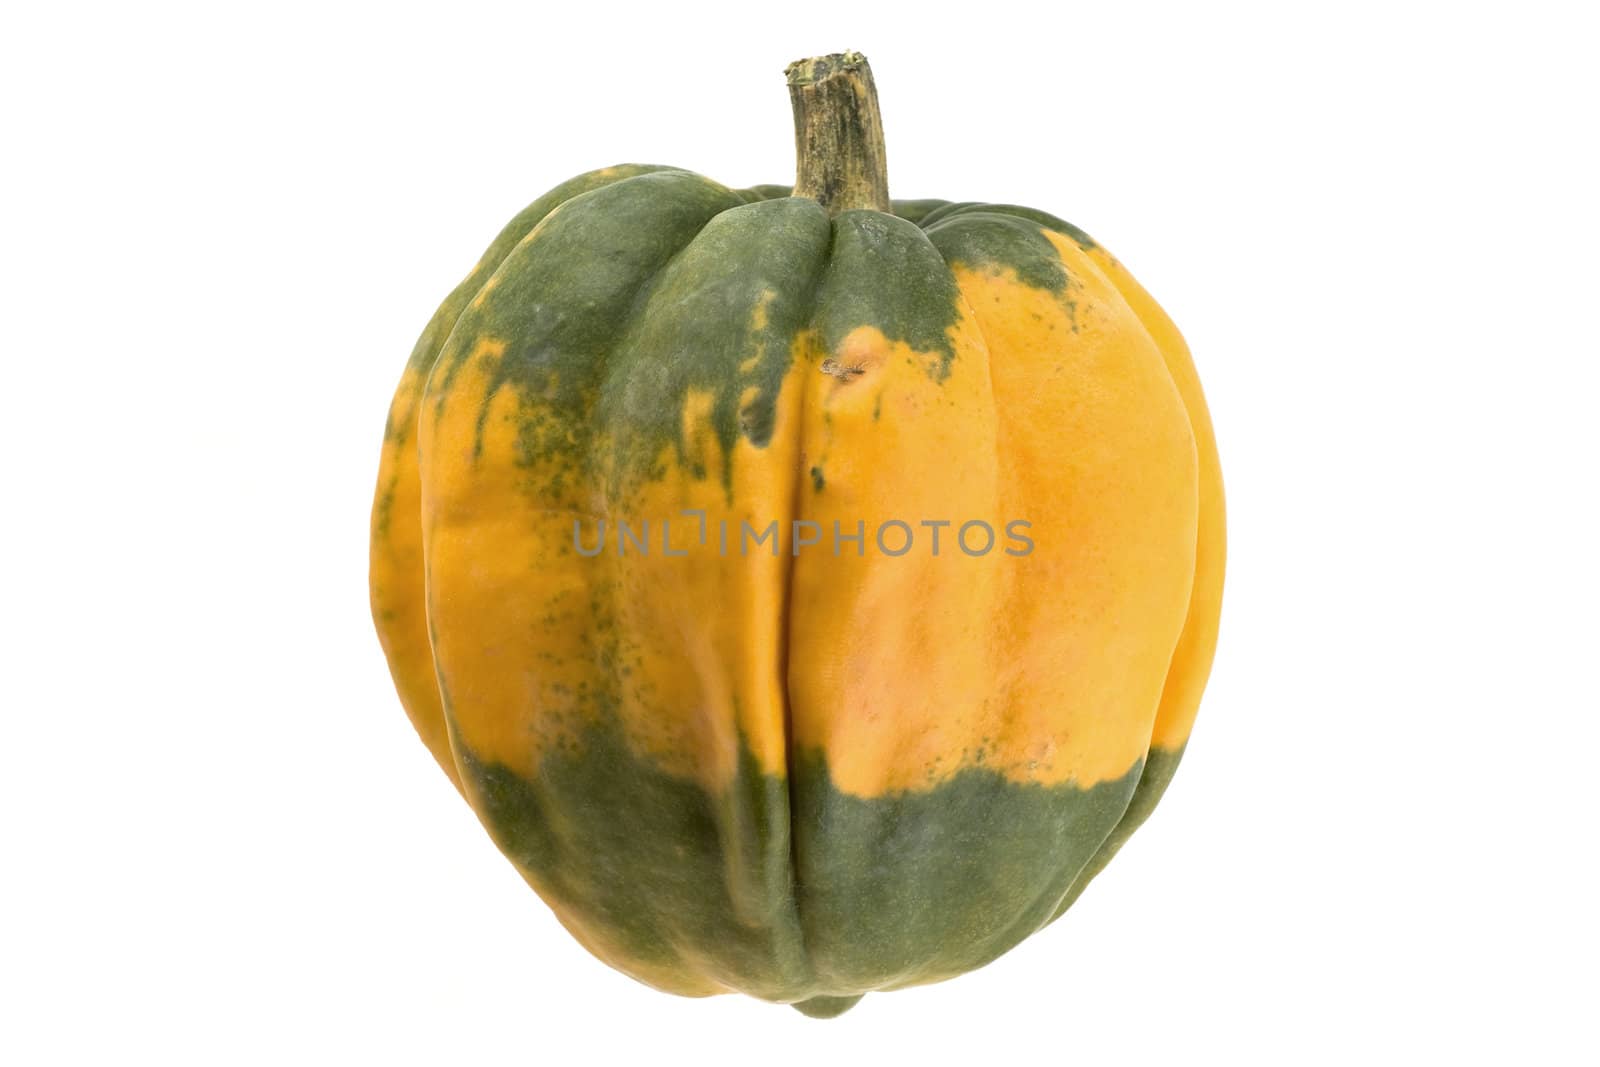 Bi-color decorative pumpkin over pure white background.